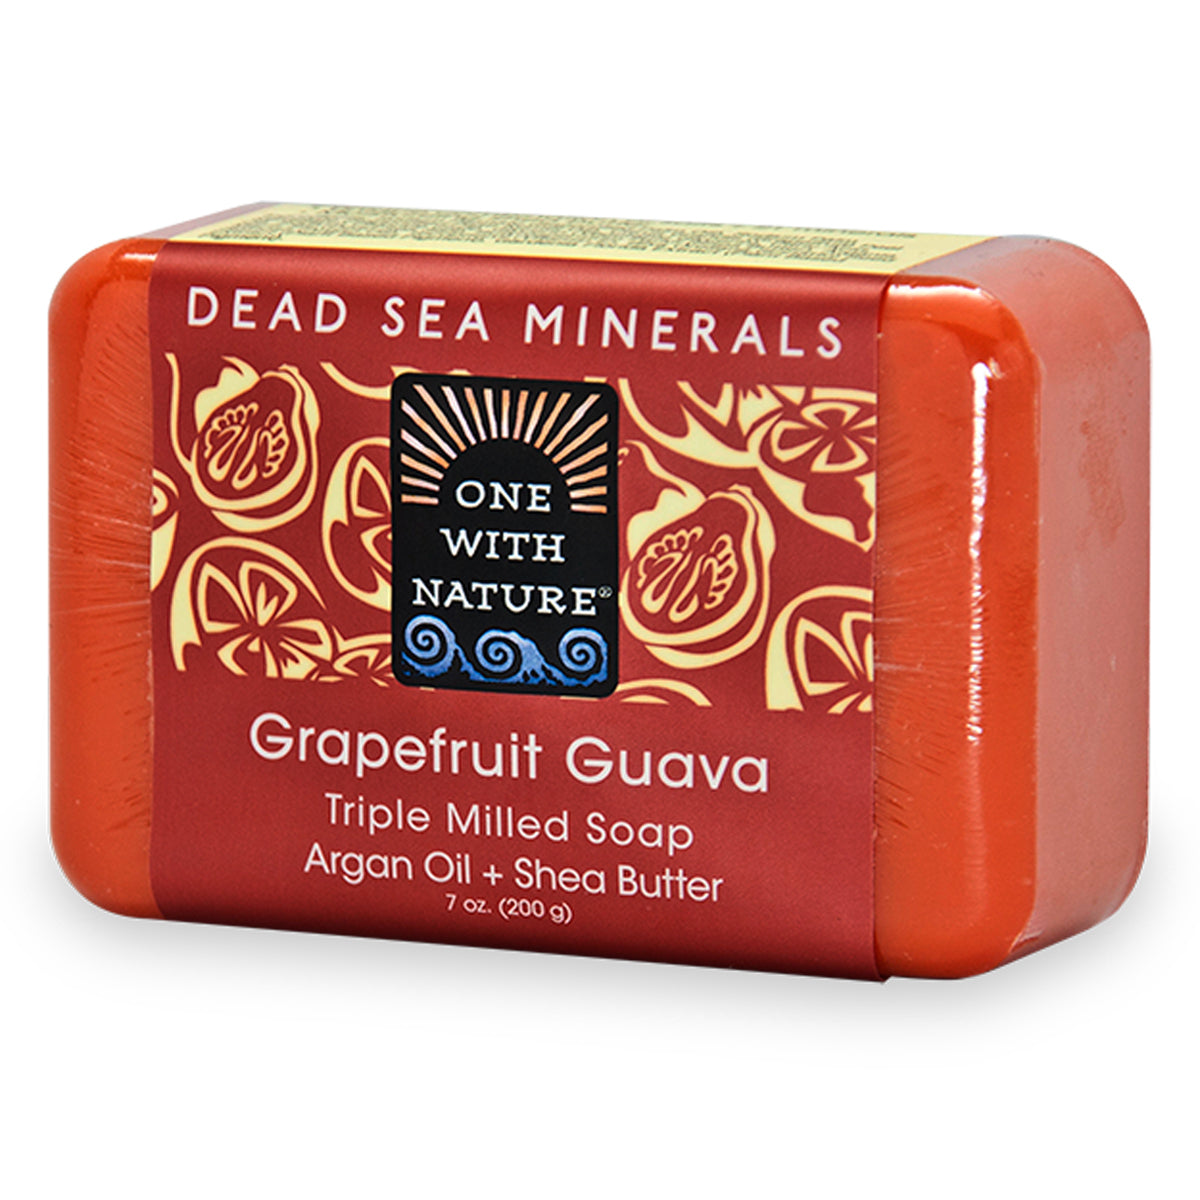 Primary image of Dead Sea Mineral Soap - Grapefruit Guava